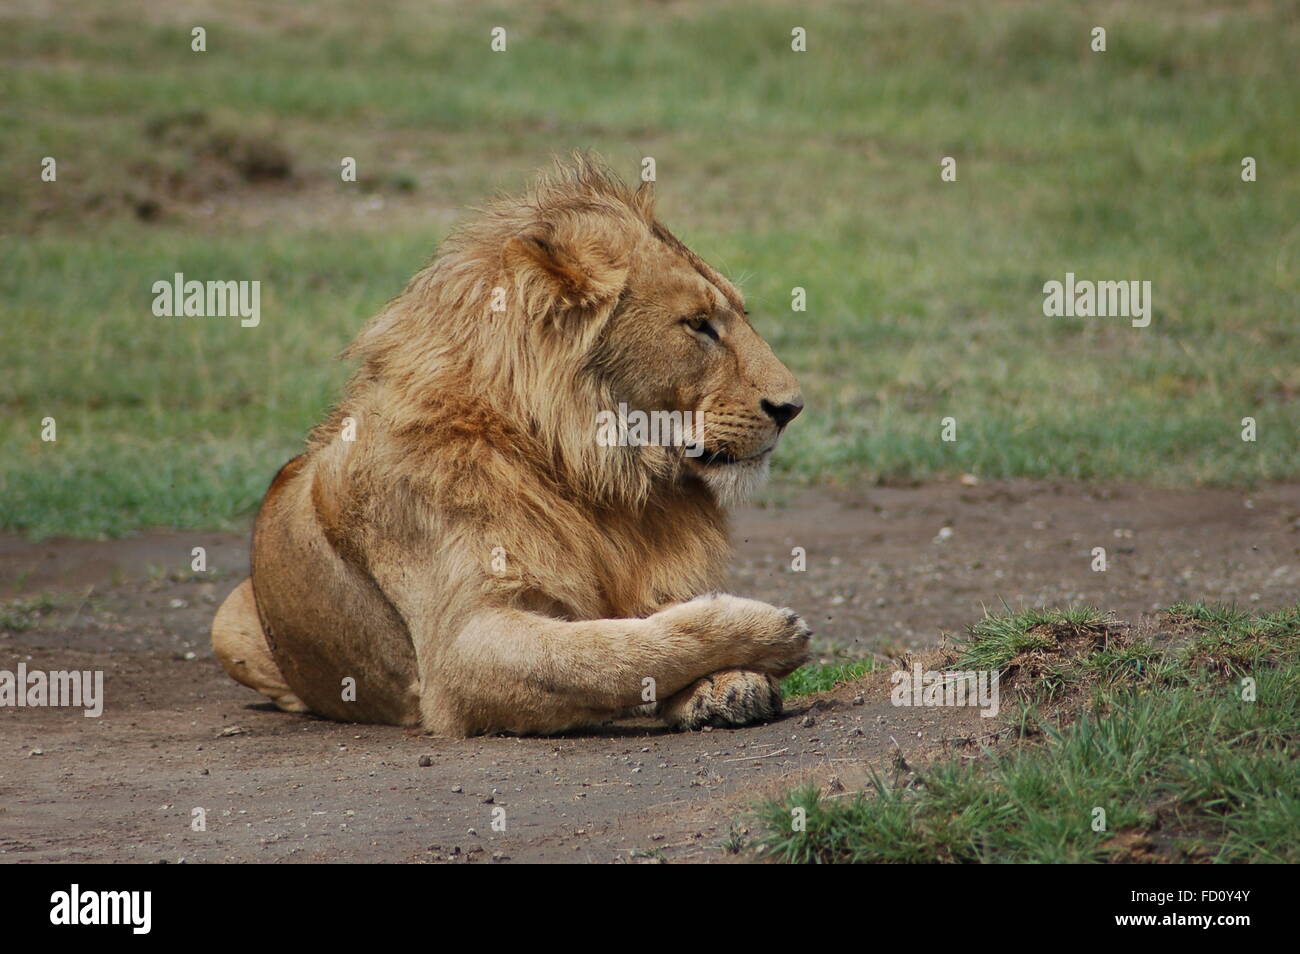 Le lion couché de l'Afrique. Banque D'Images